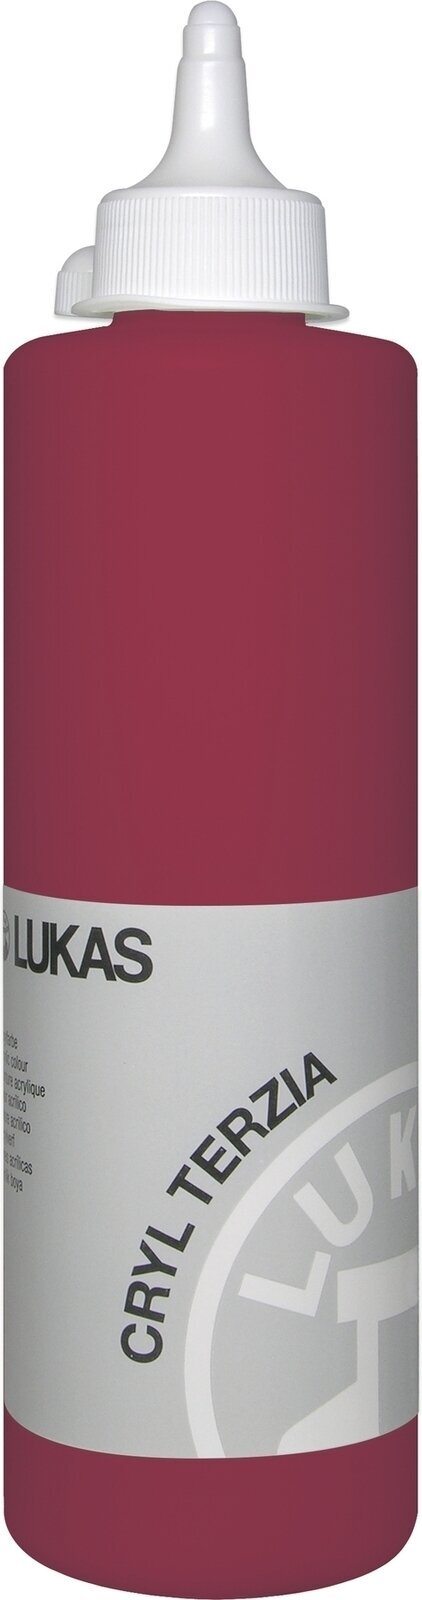 Acrylfarbe Lukas Cryl Terzia Acrylic Paint Plastic Bottle Acrylfarbe Alizarin Crimson 500 ml 1 Stck